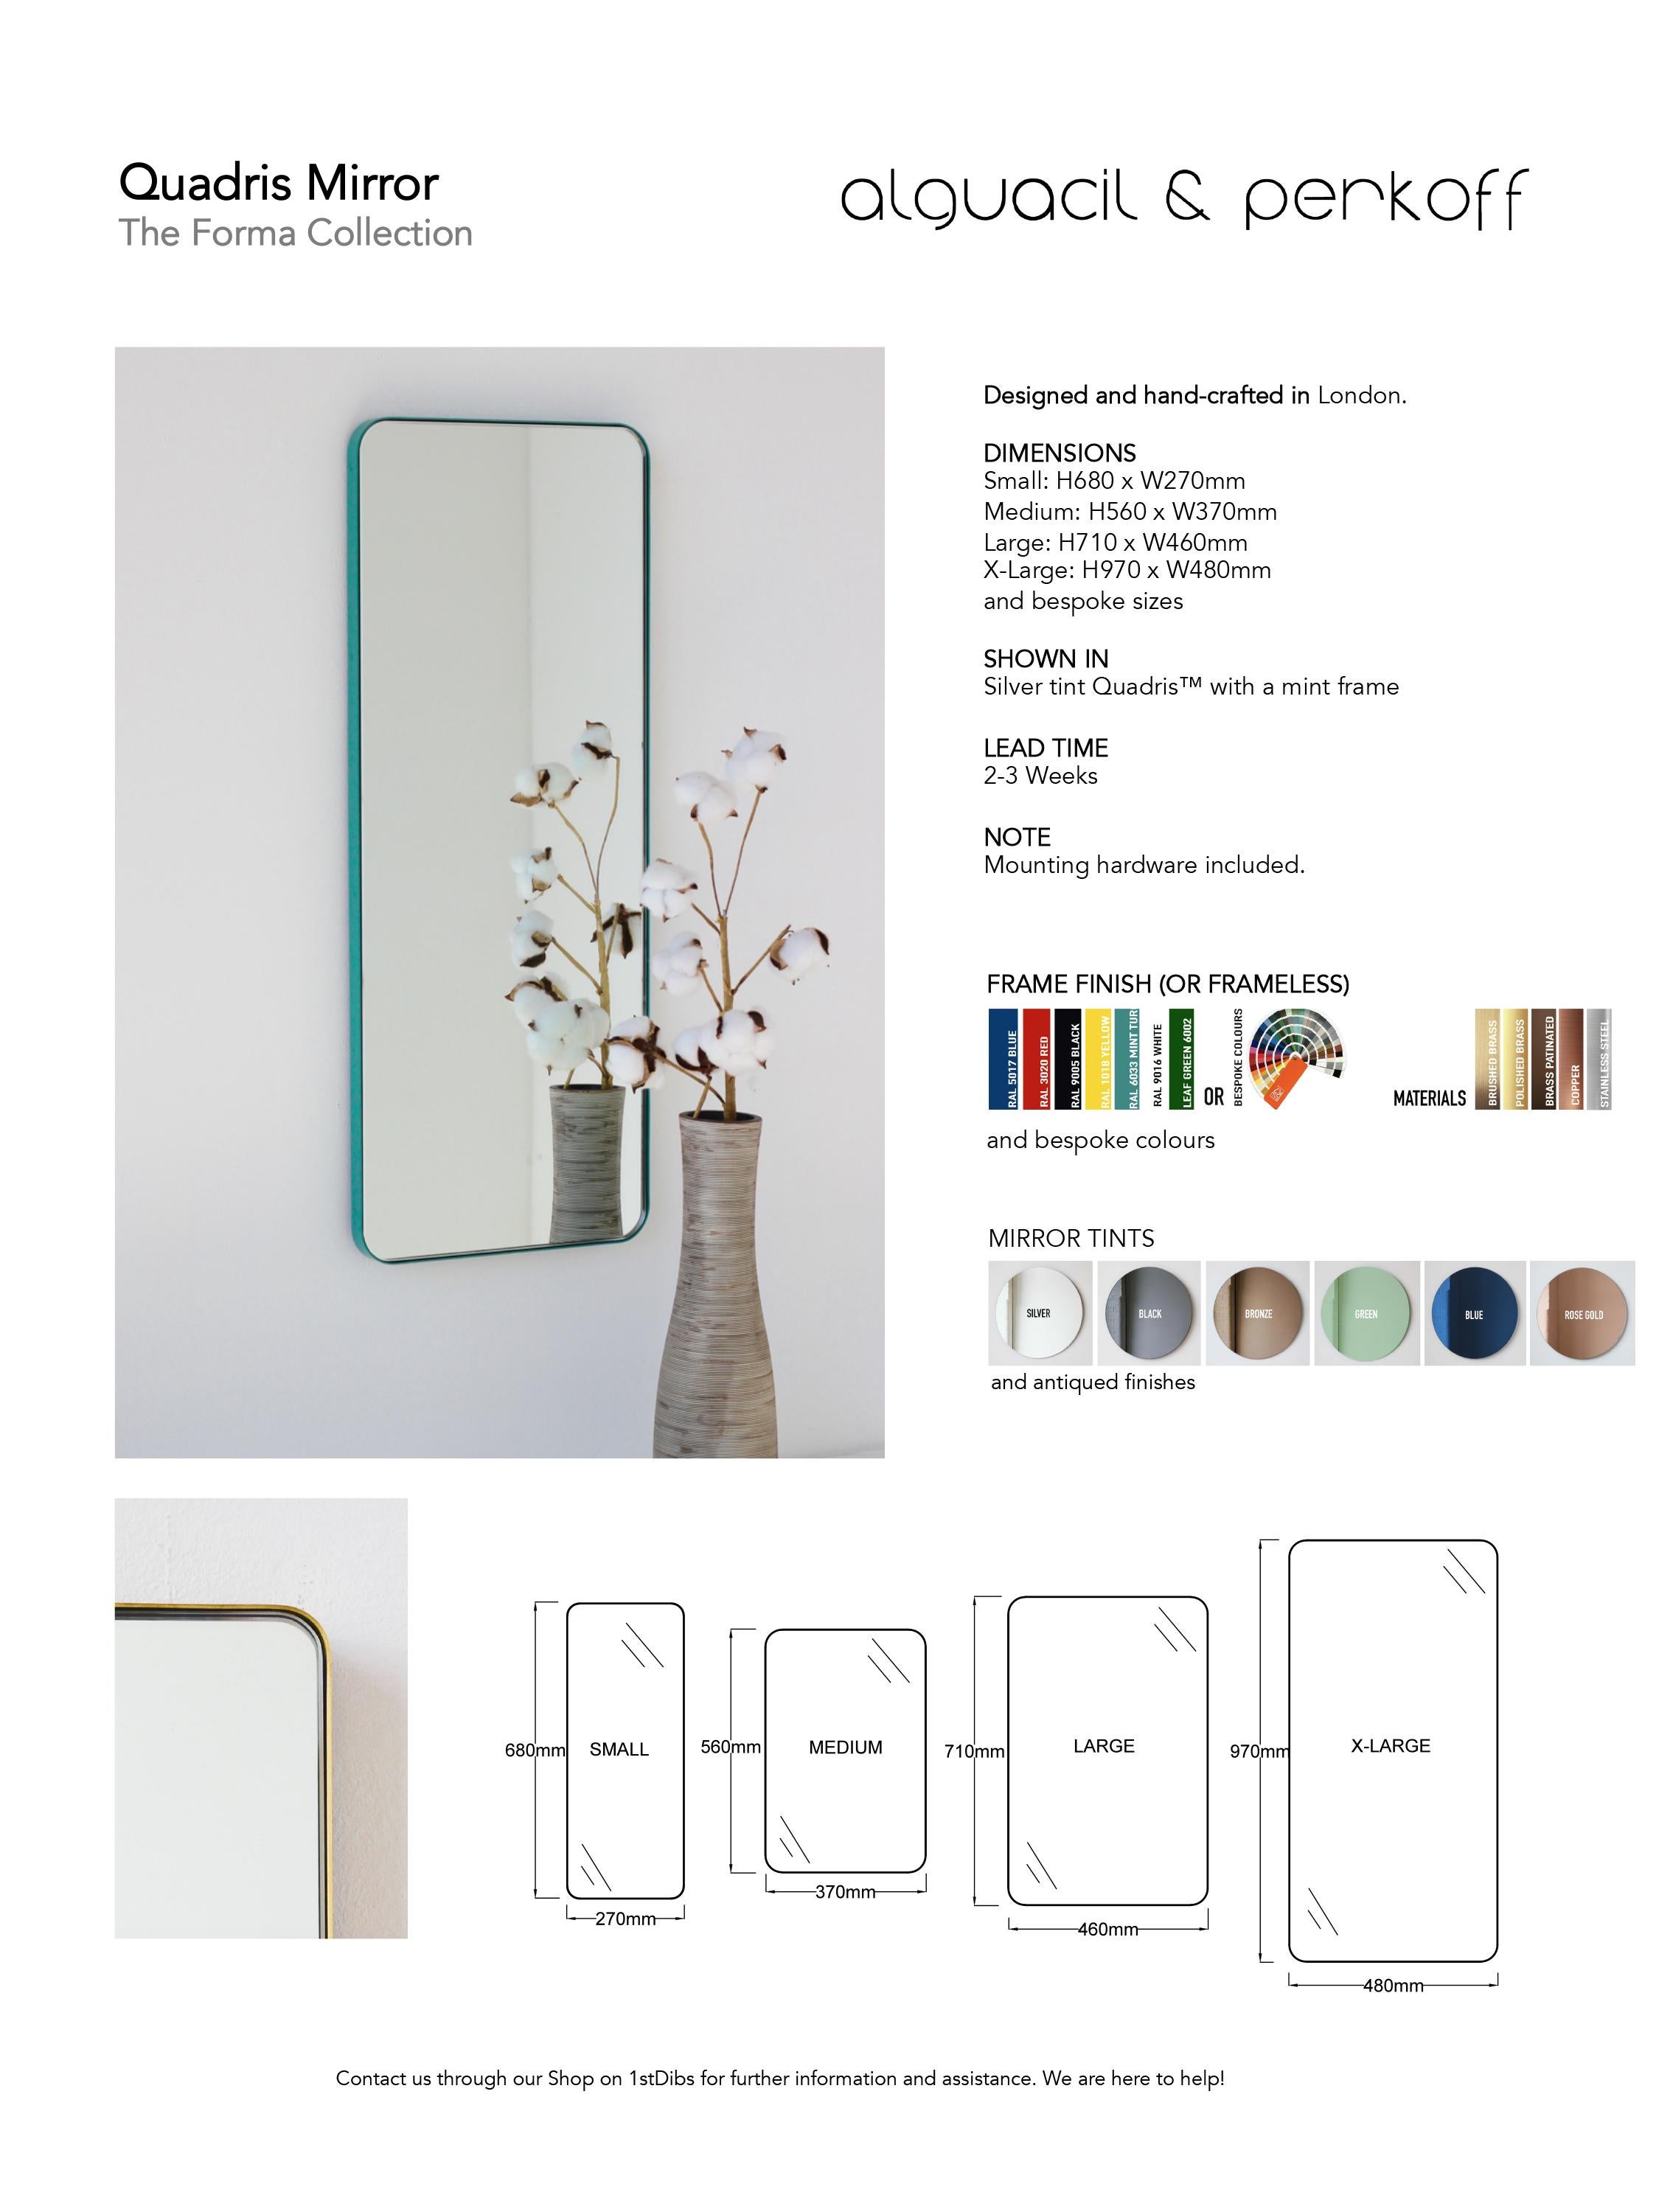 Quadris Bronze Rectangular Frameless Contemporary Mirror, Small For Sale 5